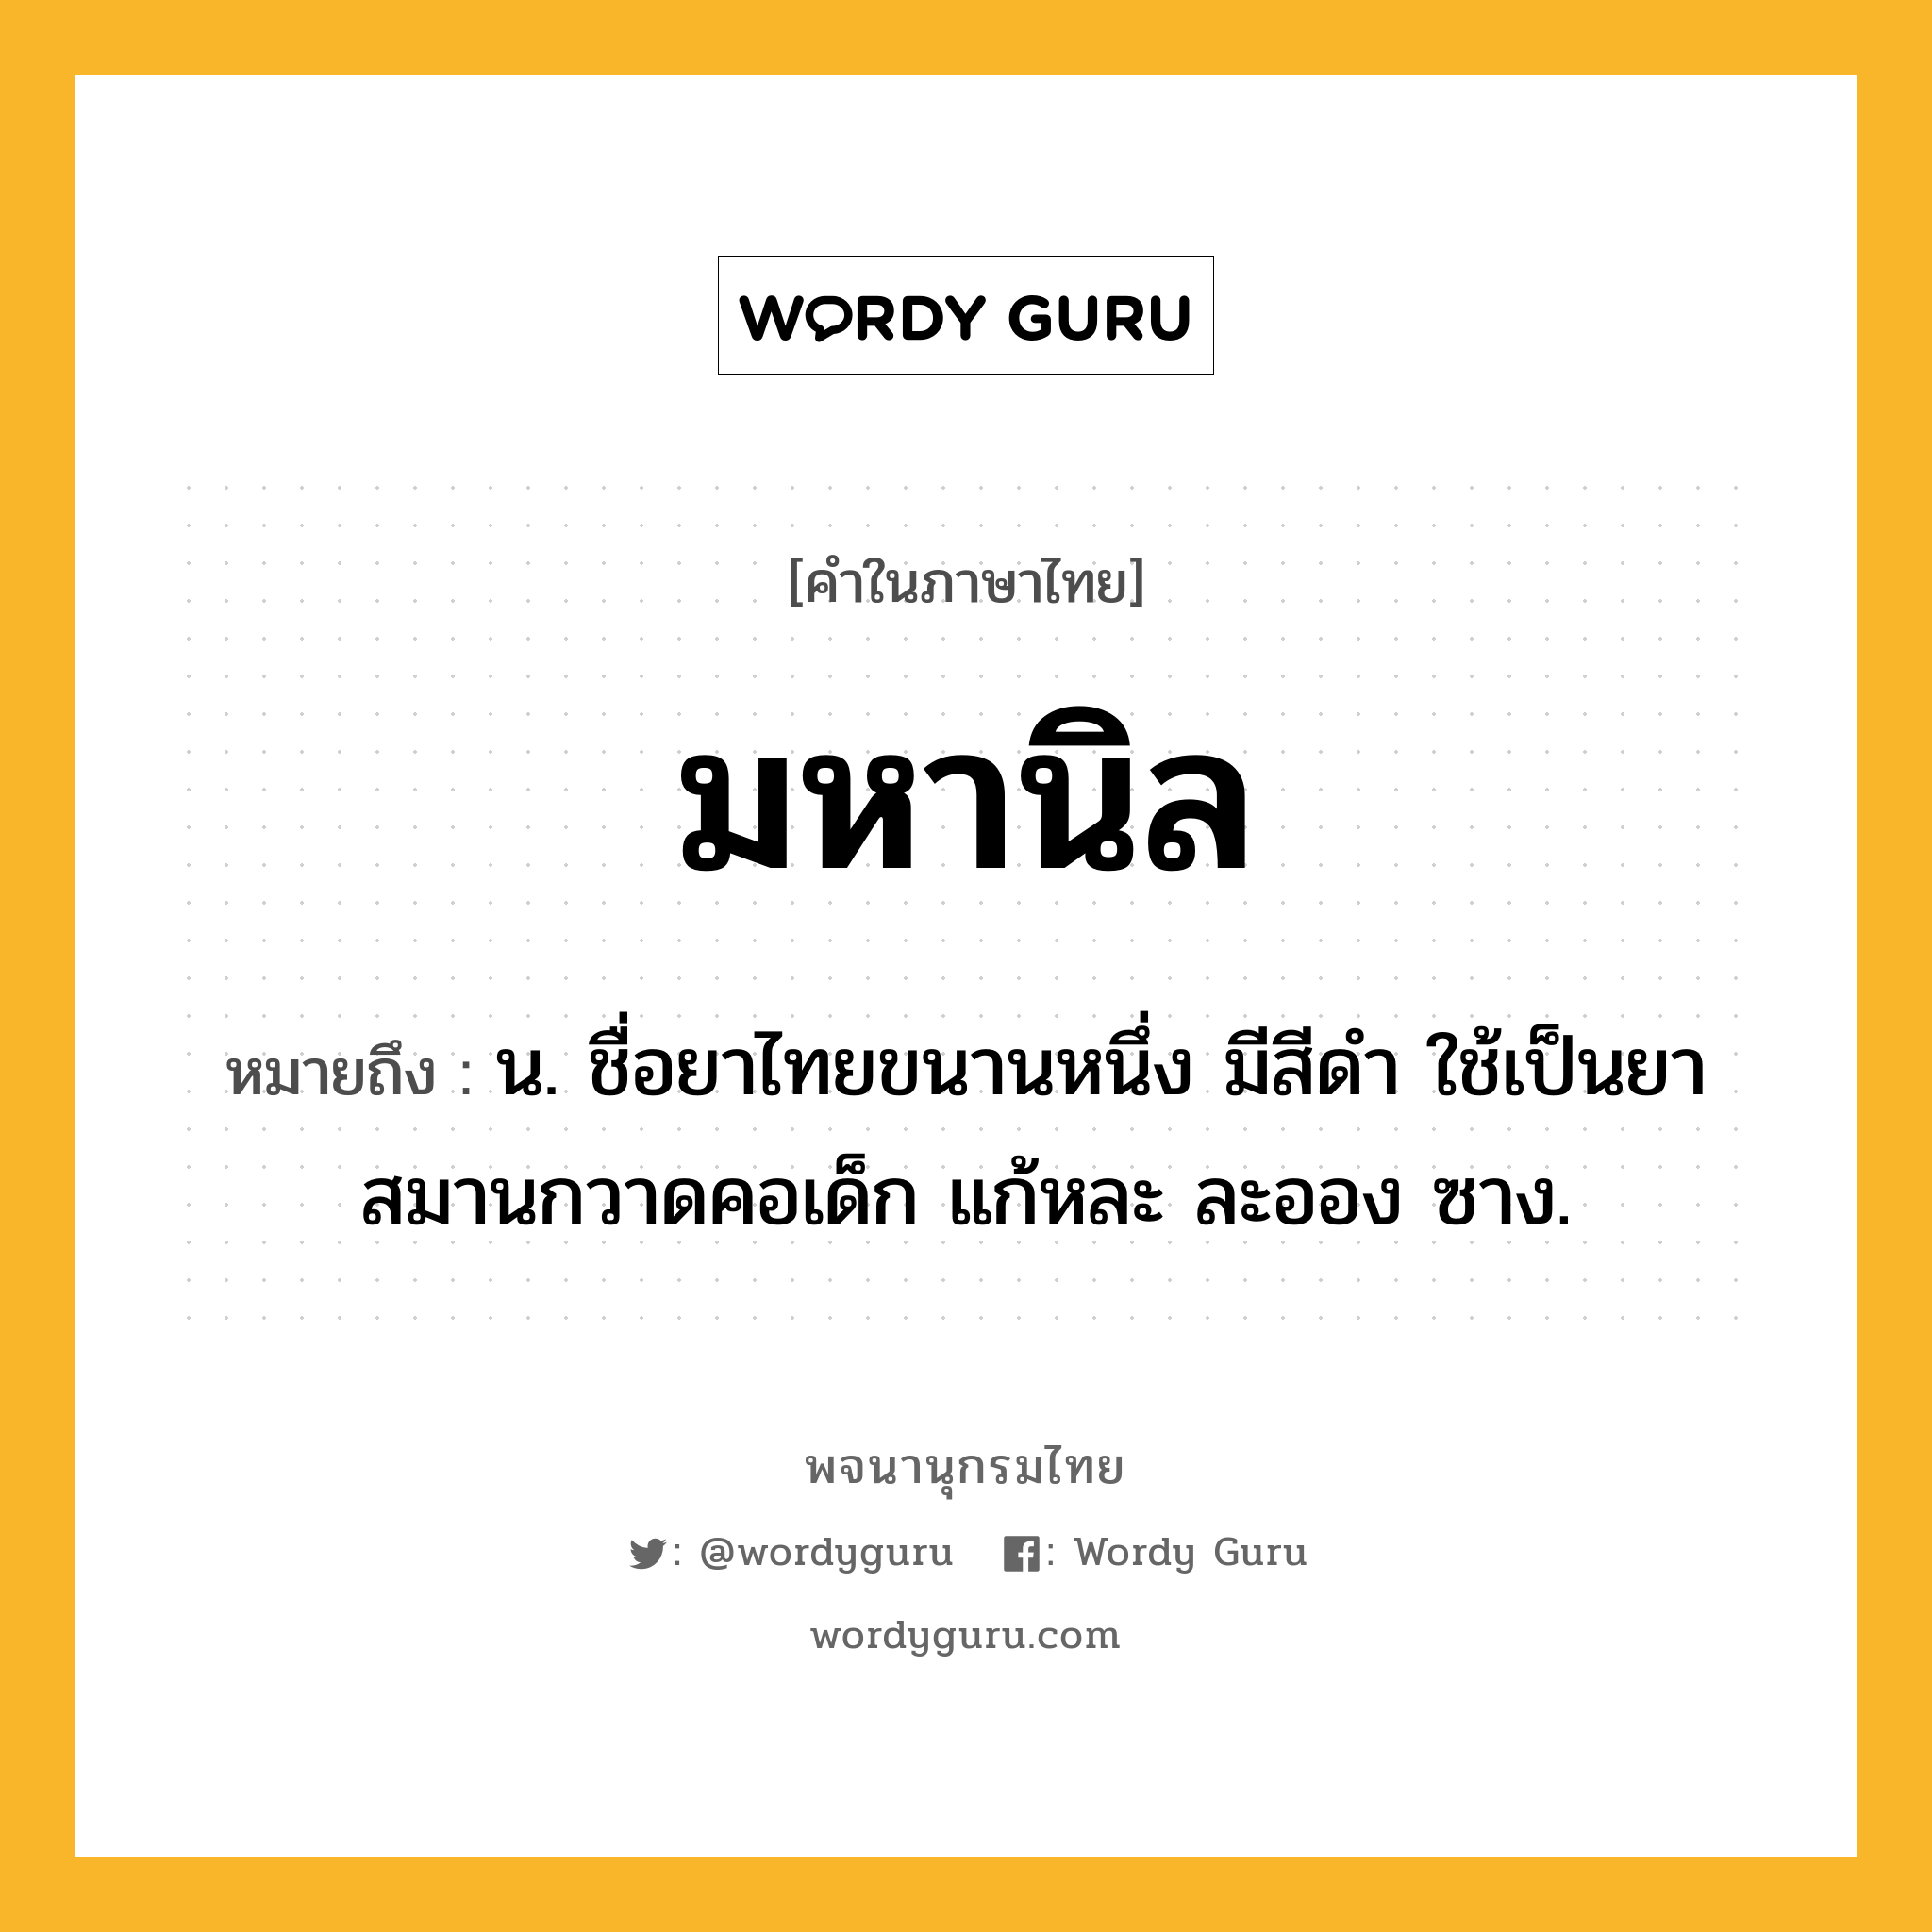 มหานิล ความหมาย หมายถึงอะไร?, คำในภาษาไทย มหานิล หมายถึง น. ชื่อยาไทยขนานหนึ่ง มีสีดํา ใช้เป็นยาสมานกวาดคอเด็ก แก้หละ ละออง ซาง.